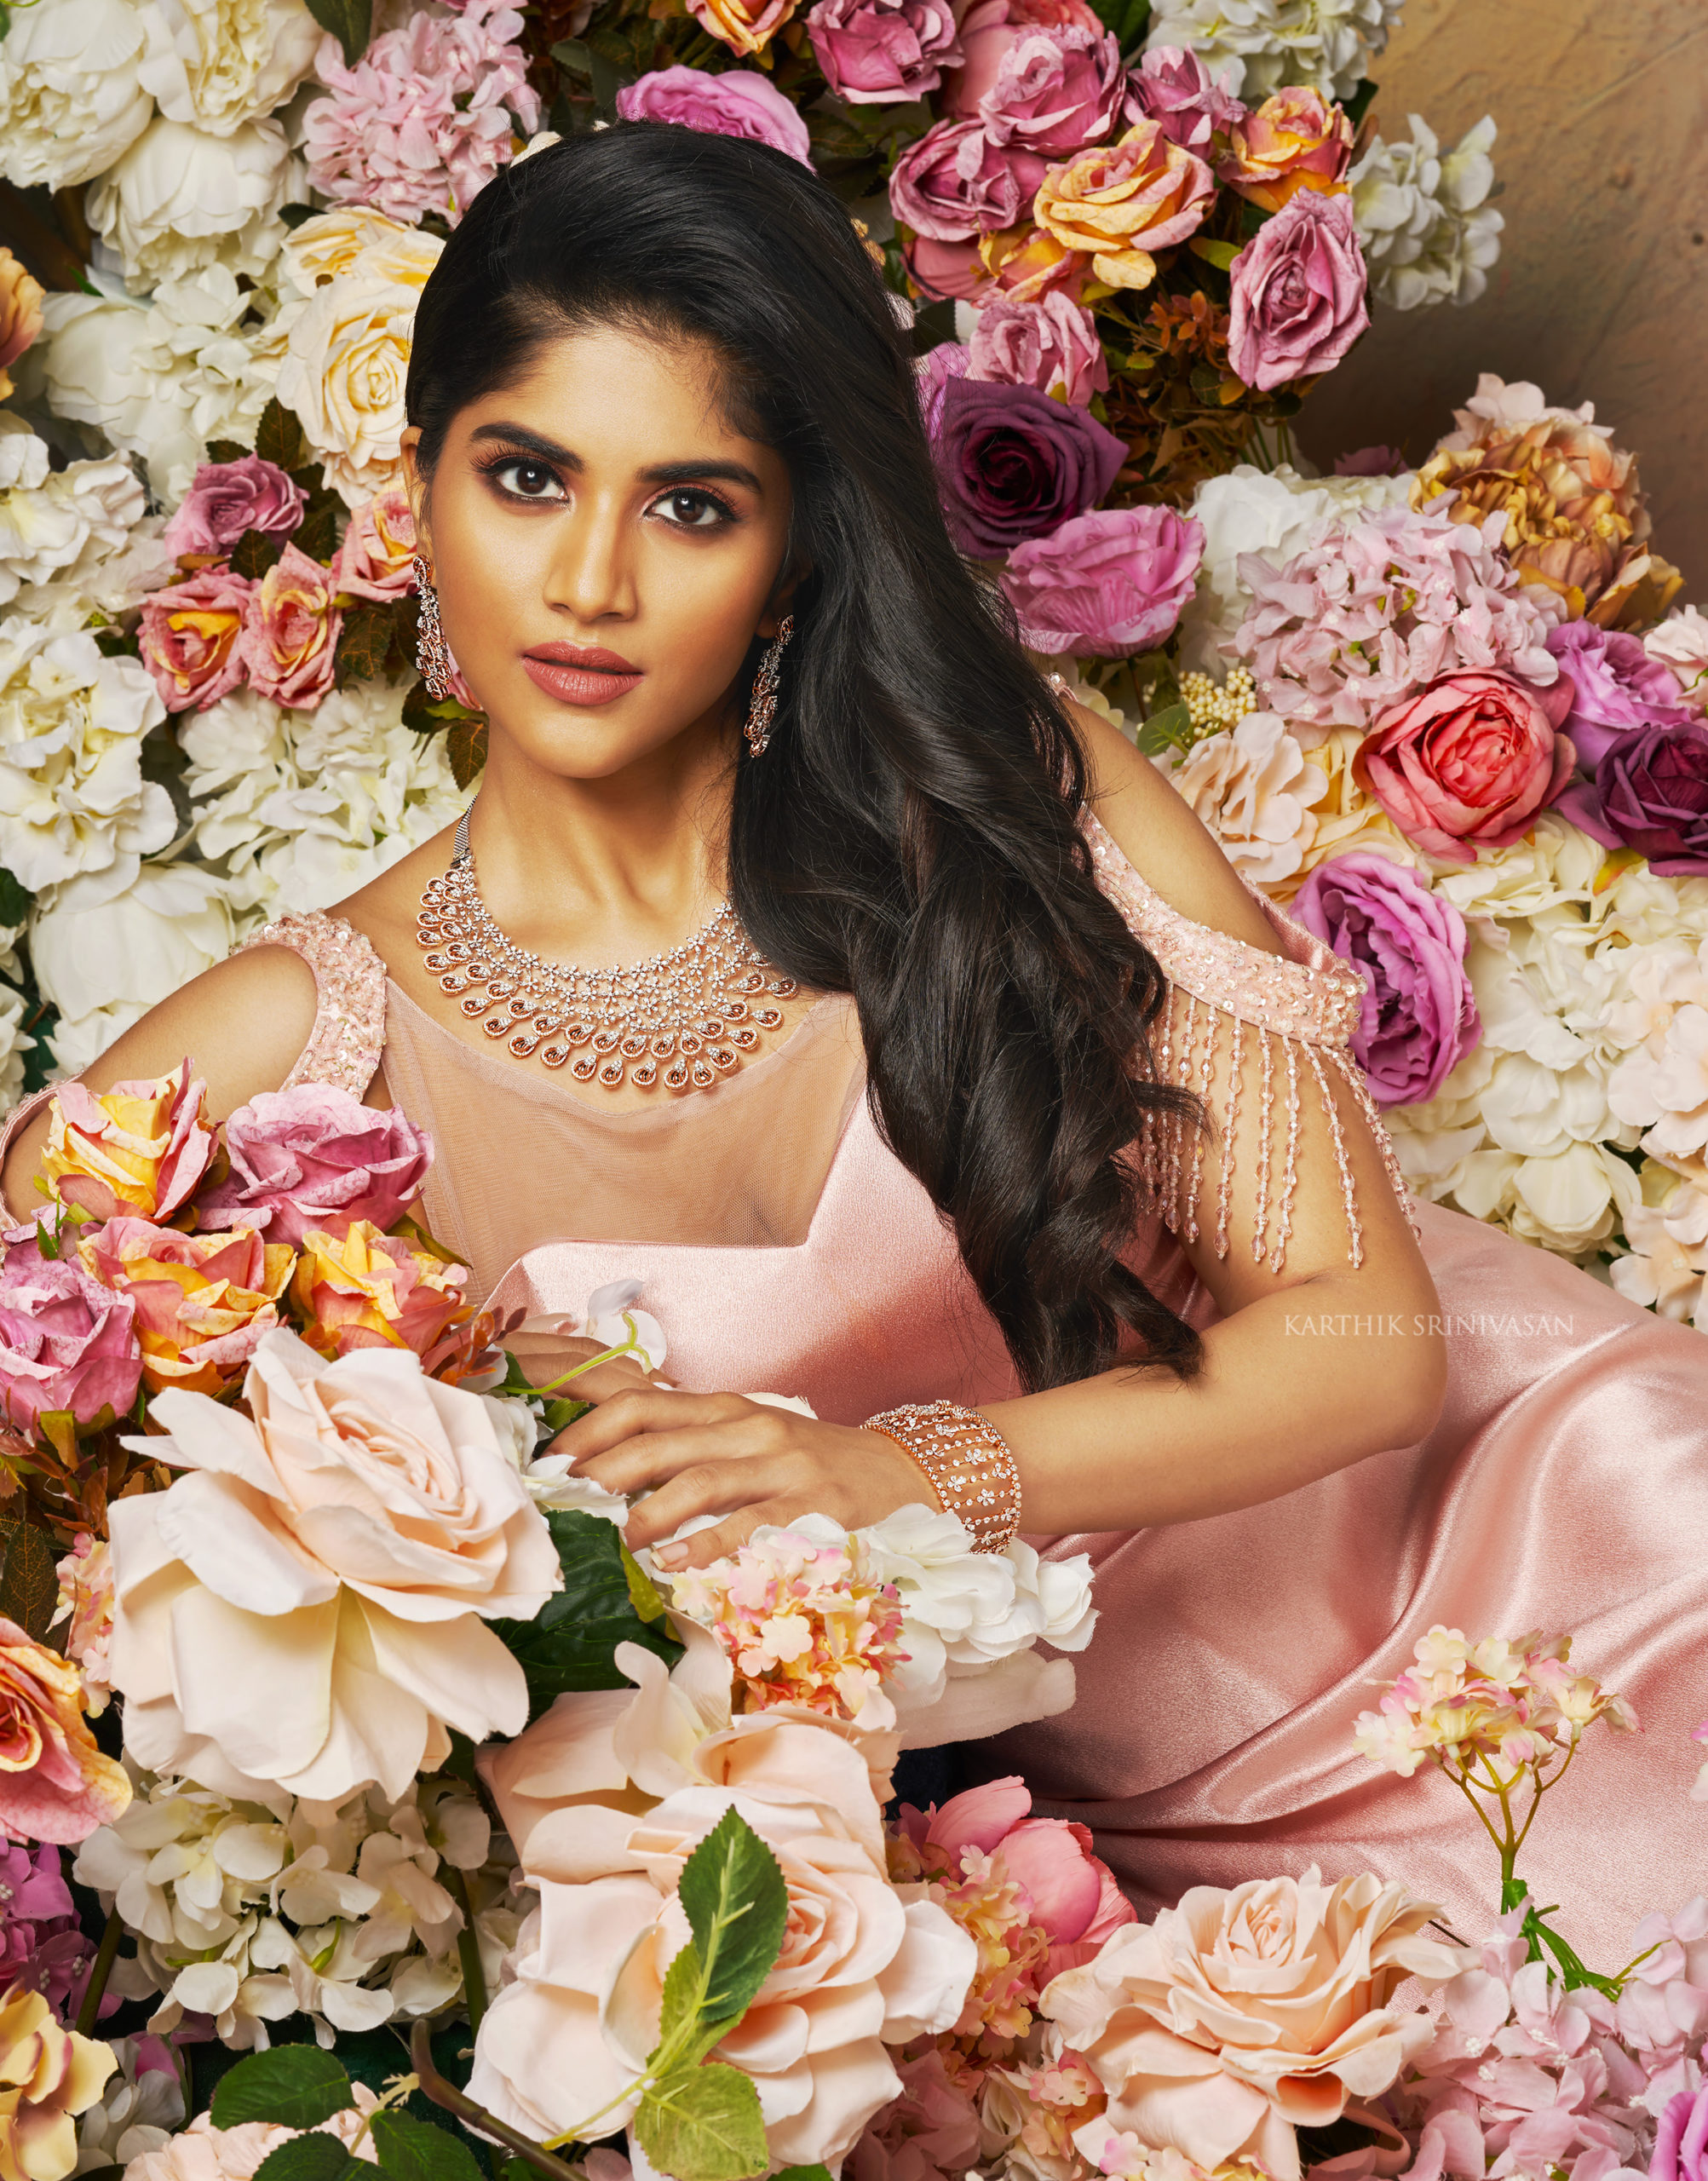 Megha Akash - The Royals 2020 Calendar by Karthik Srinivasan